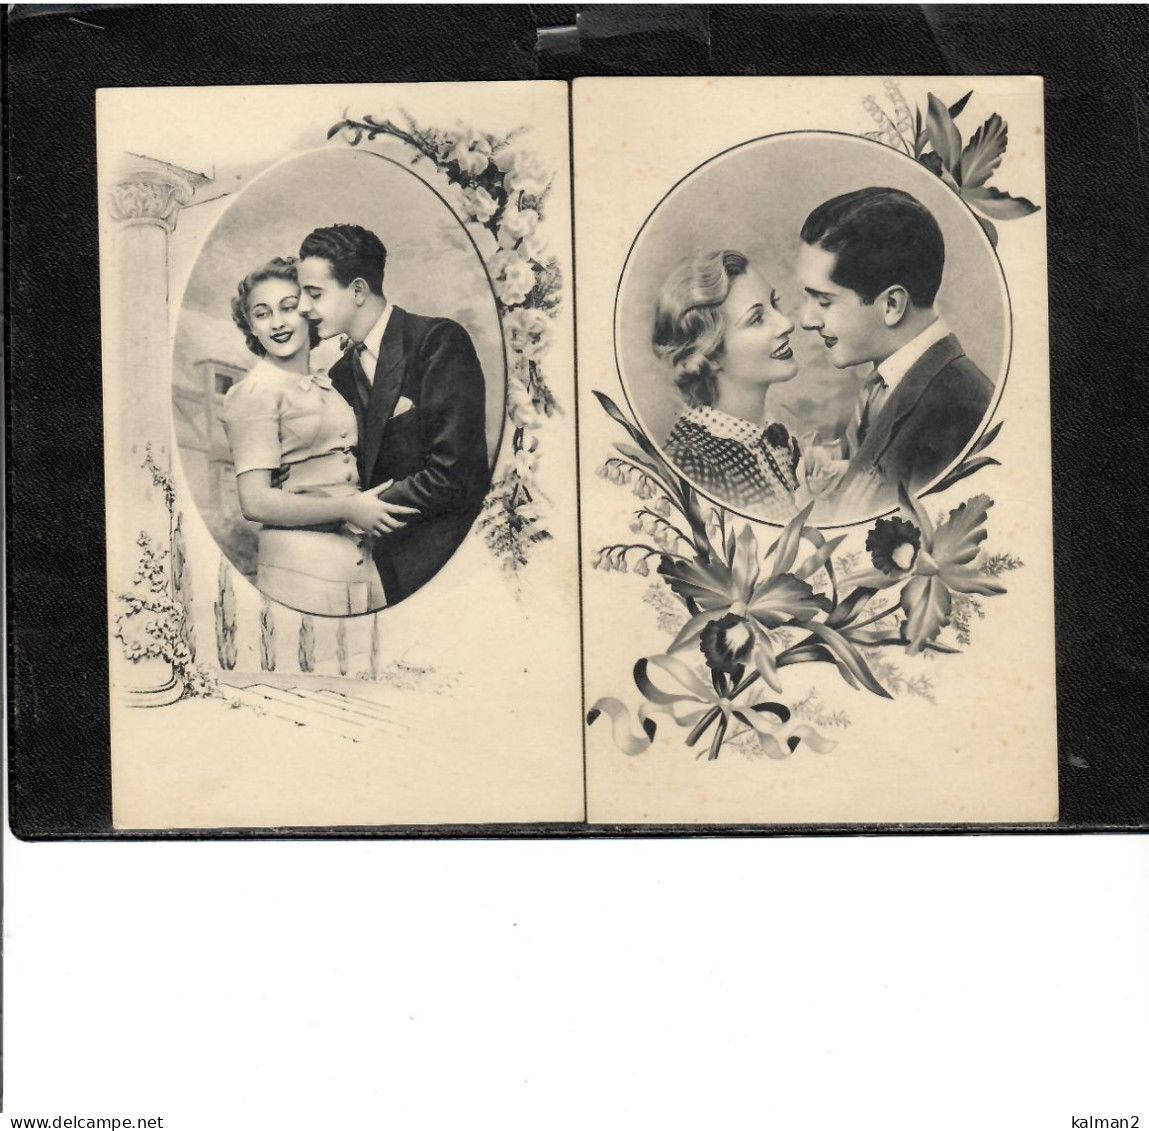 16686 - 15 cards in b/n periodo anni '30 , tematica "coppie "